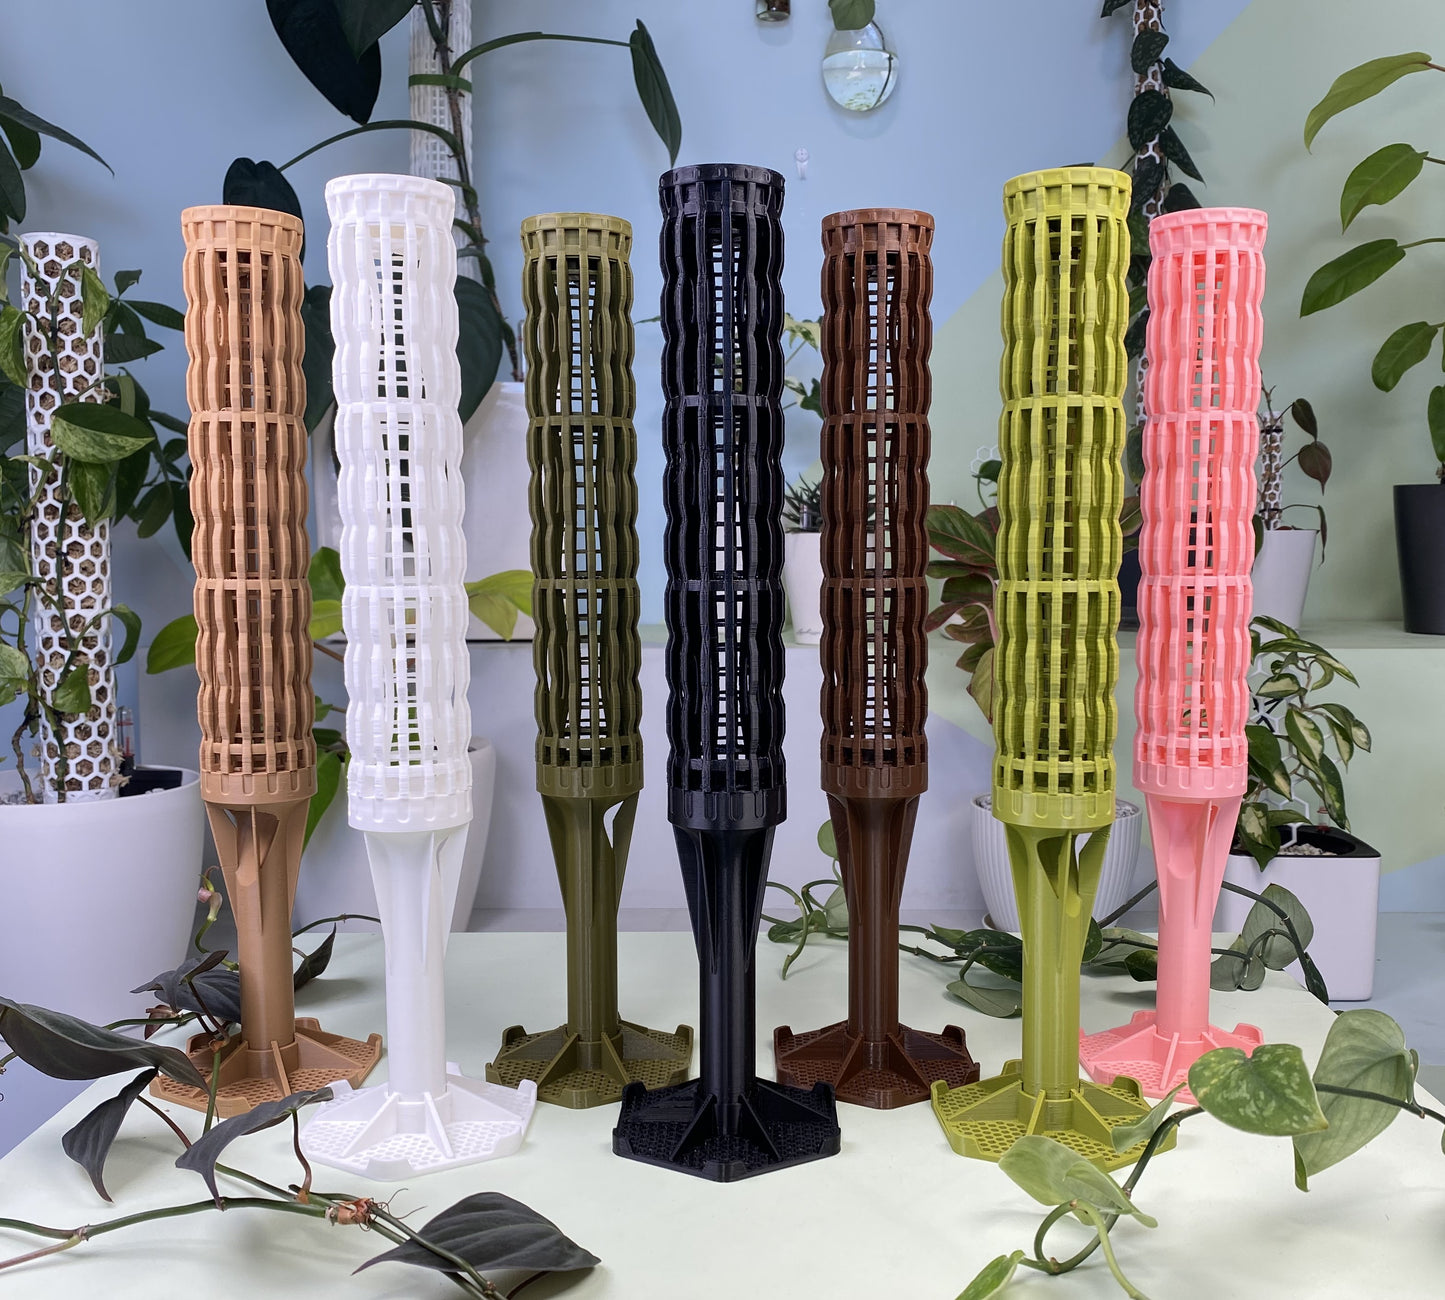 2.0″Φ/Large Pro Series Plant Poles: Enhance Your Space with the Ultra-Sturdy Extendable Boho Designer Moss Pole by OrchidBox